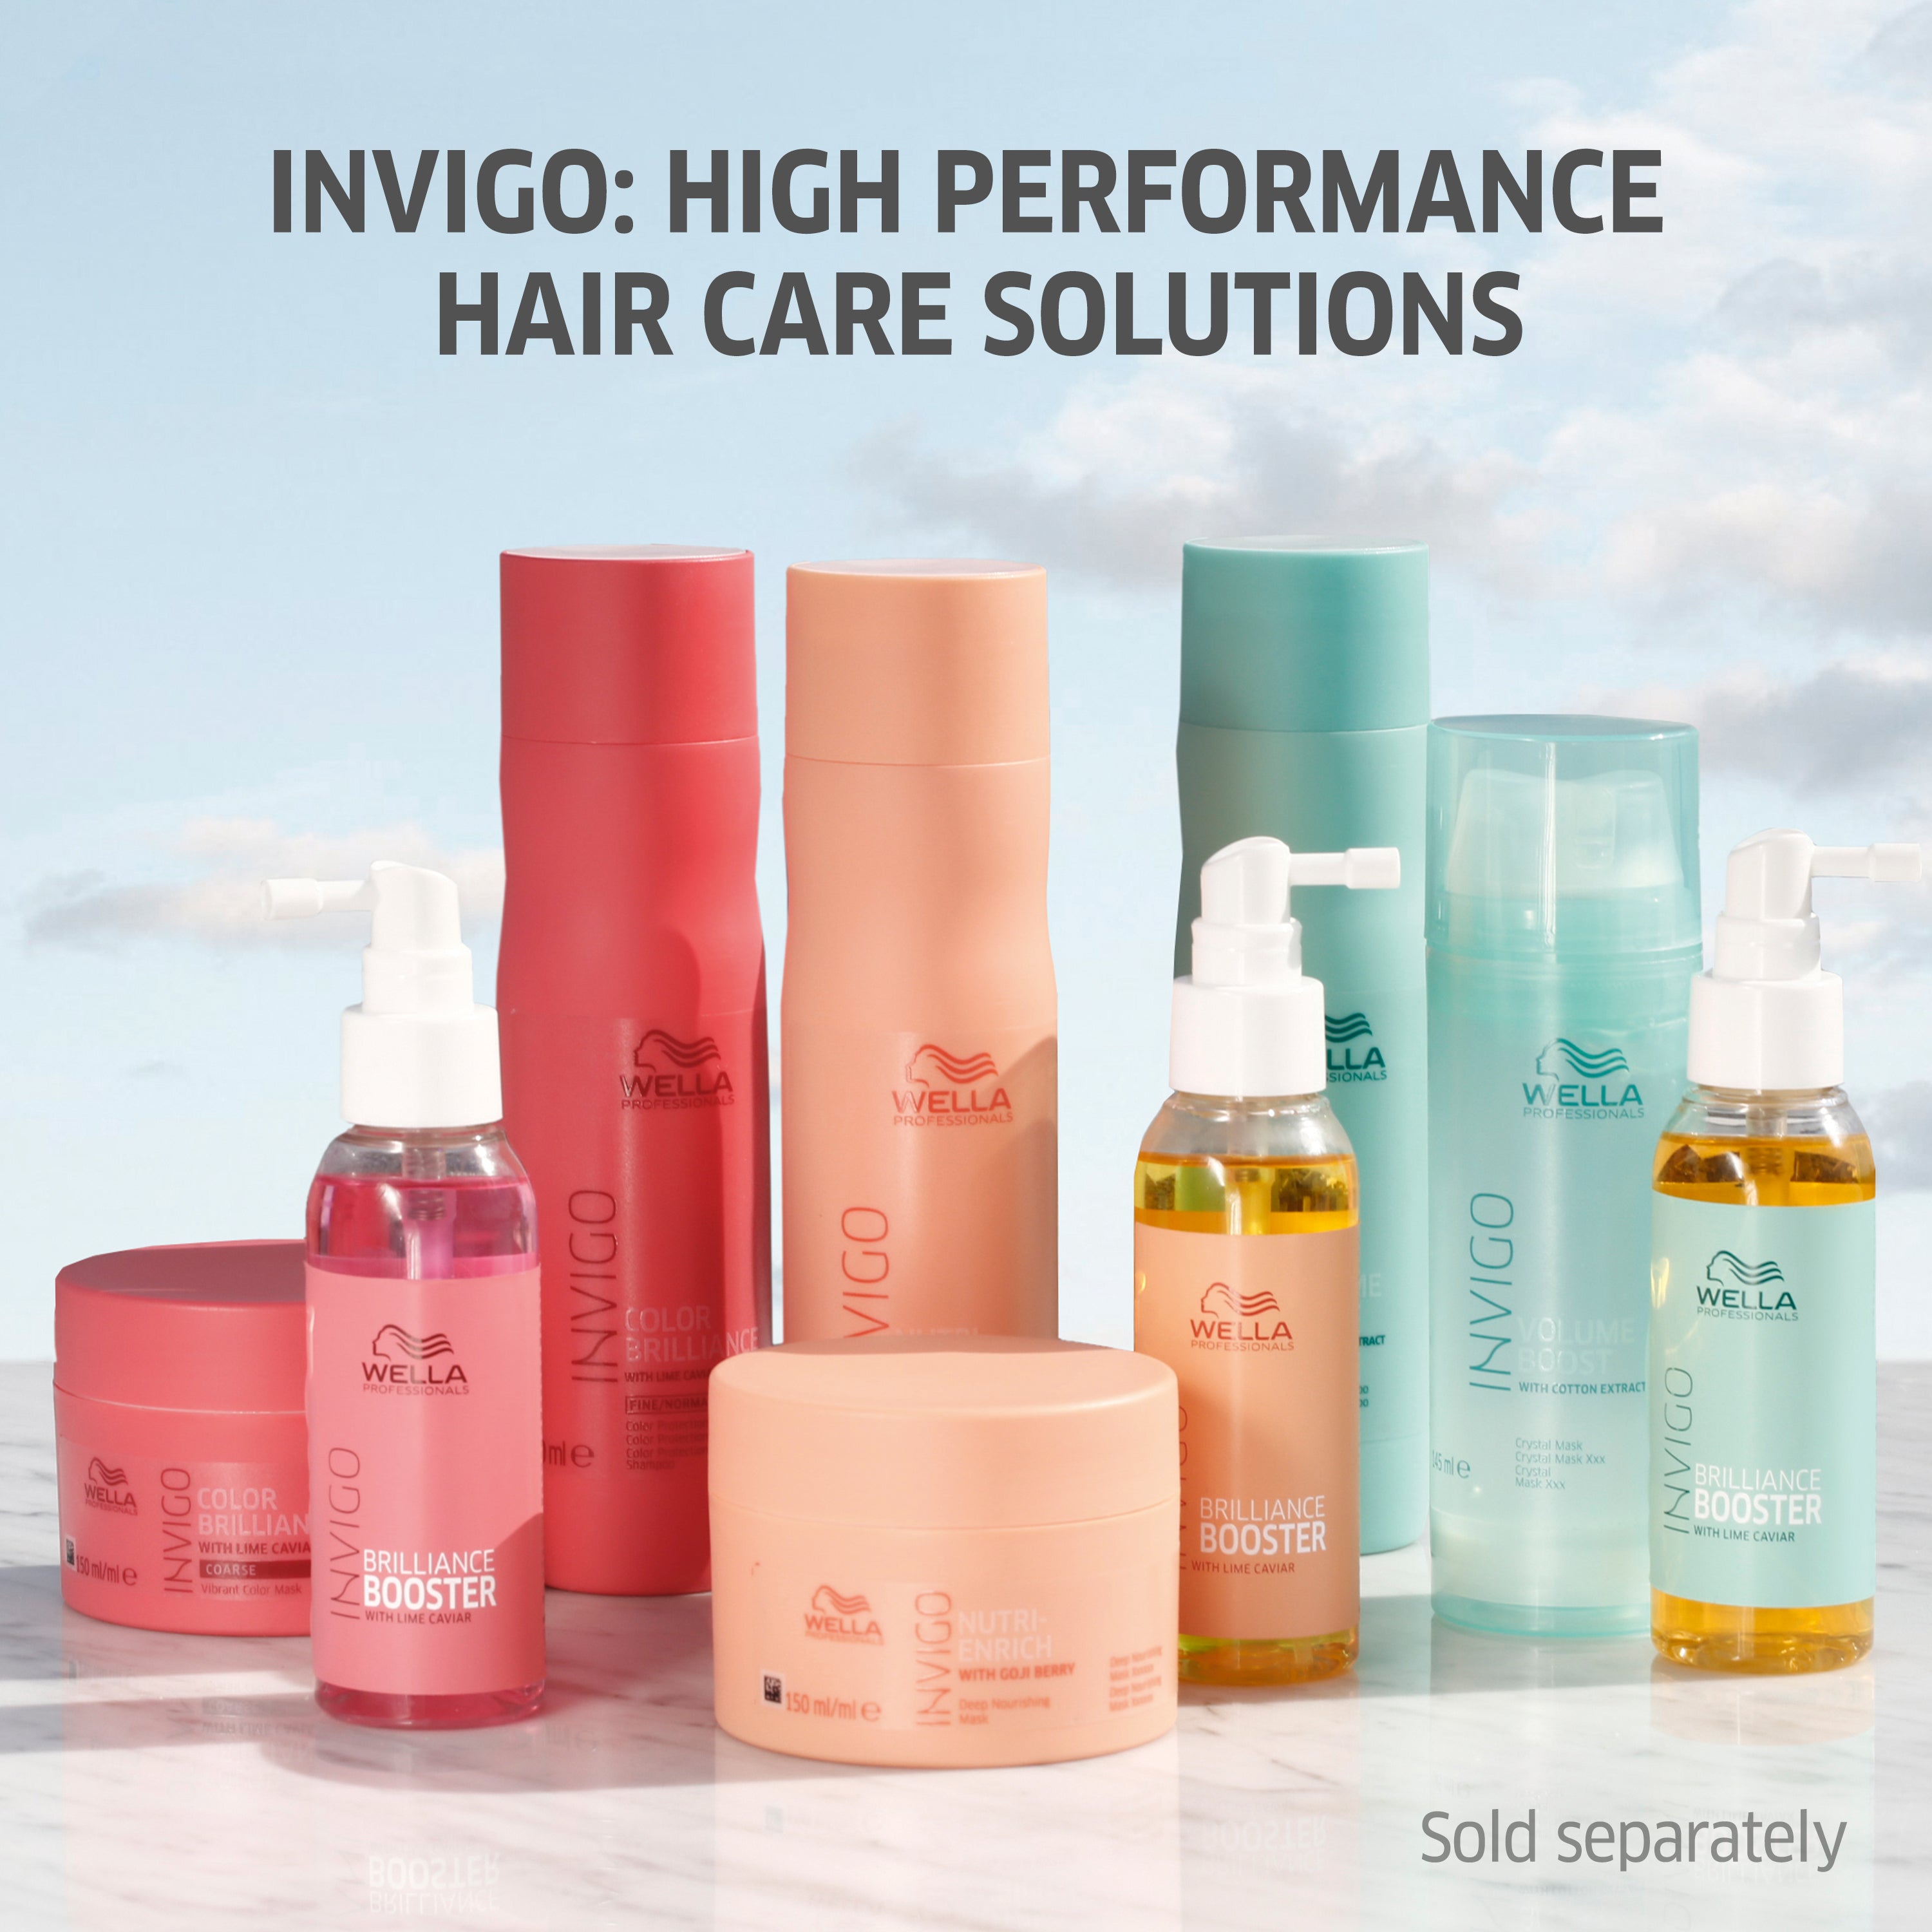 Wella Professional Invigo Shampoo 250 ML Senso Calm